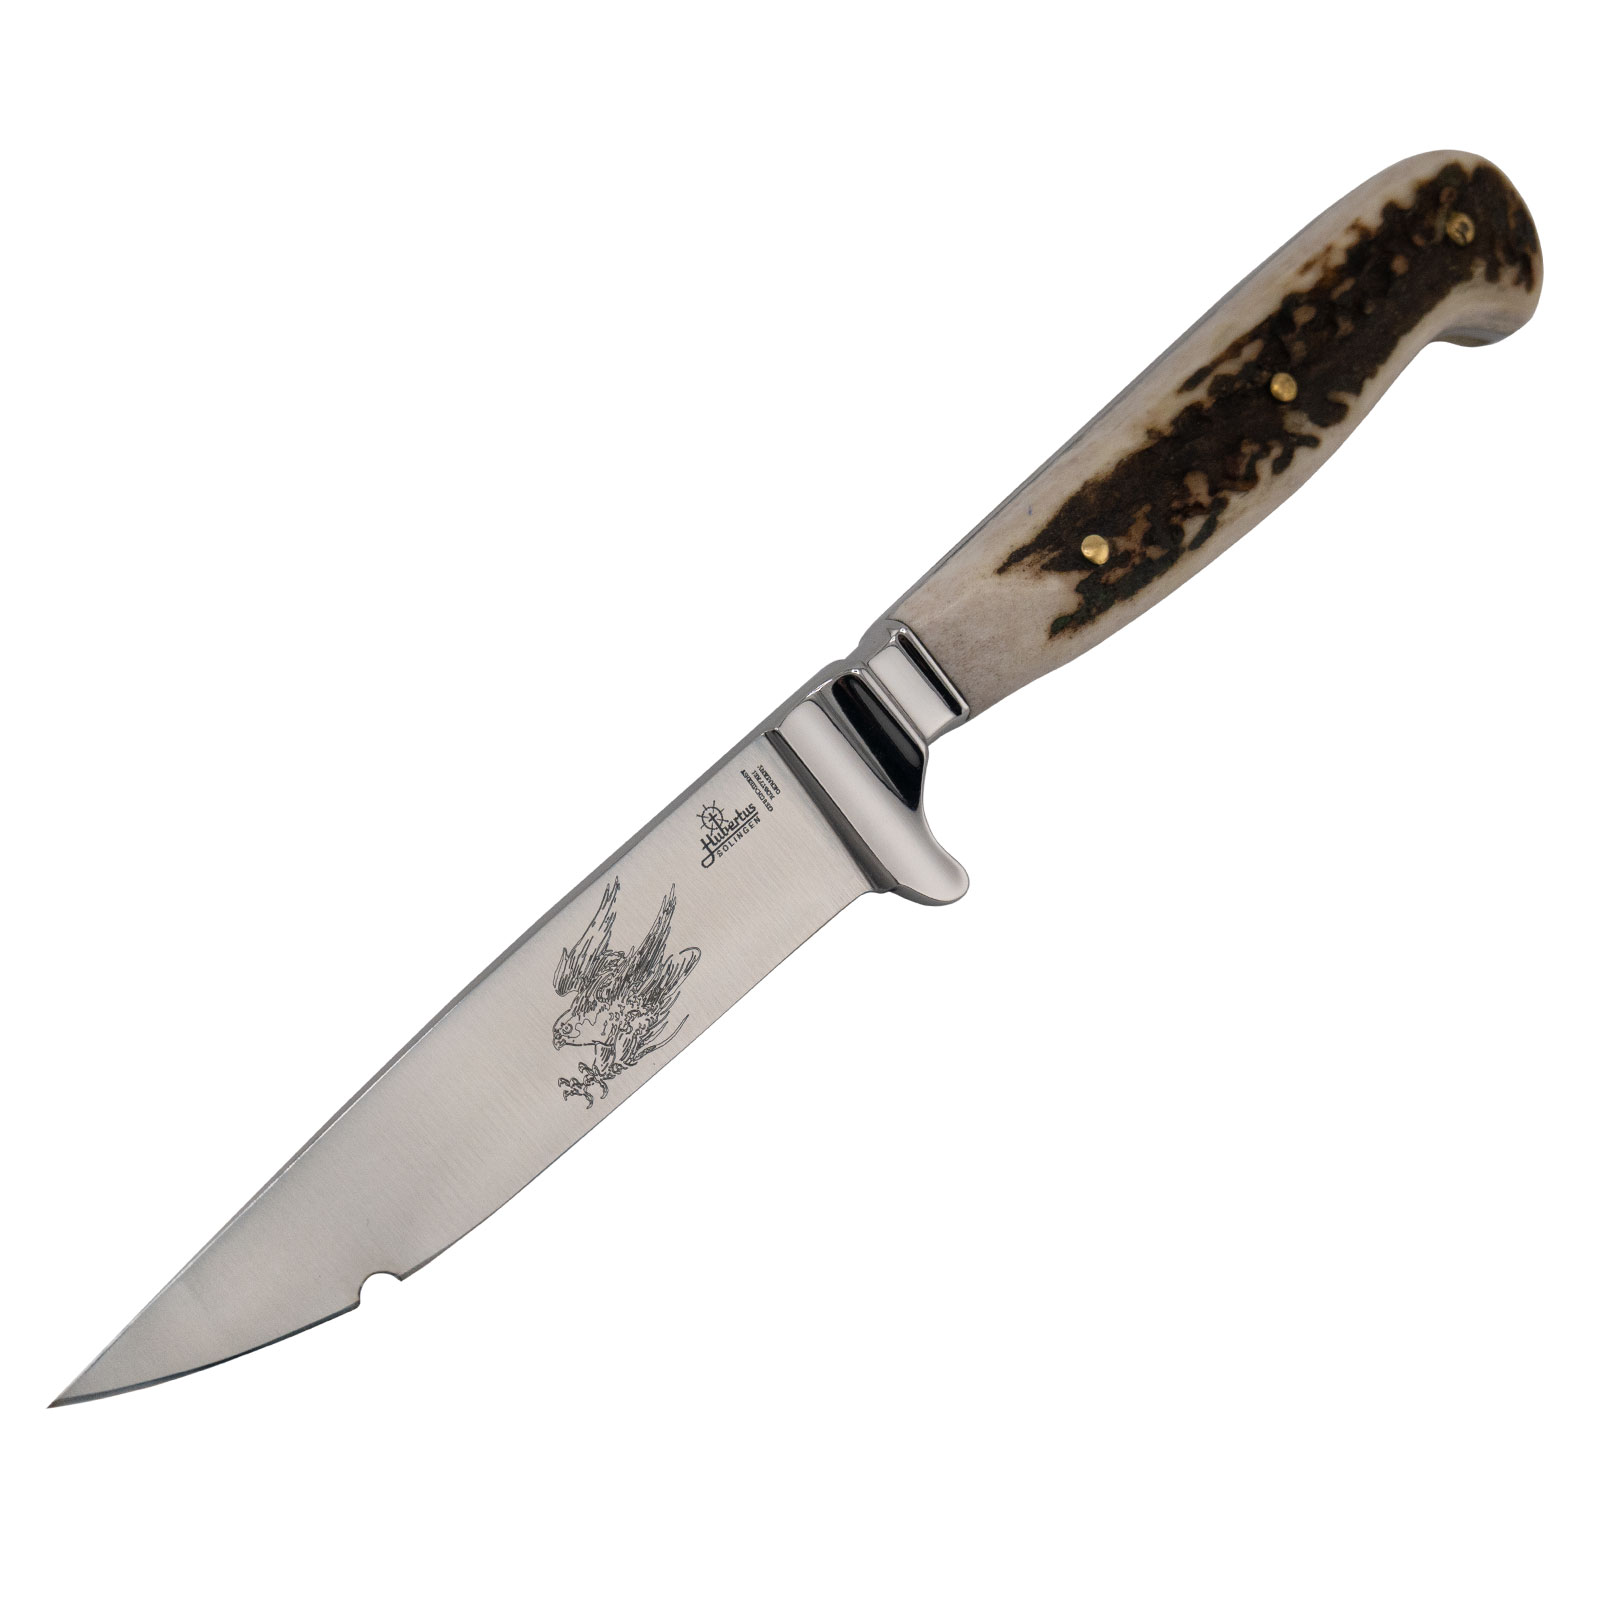 HUBERTUS Falconer Knife